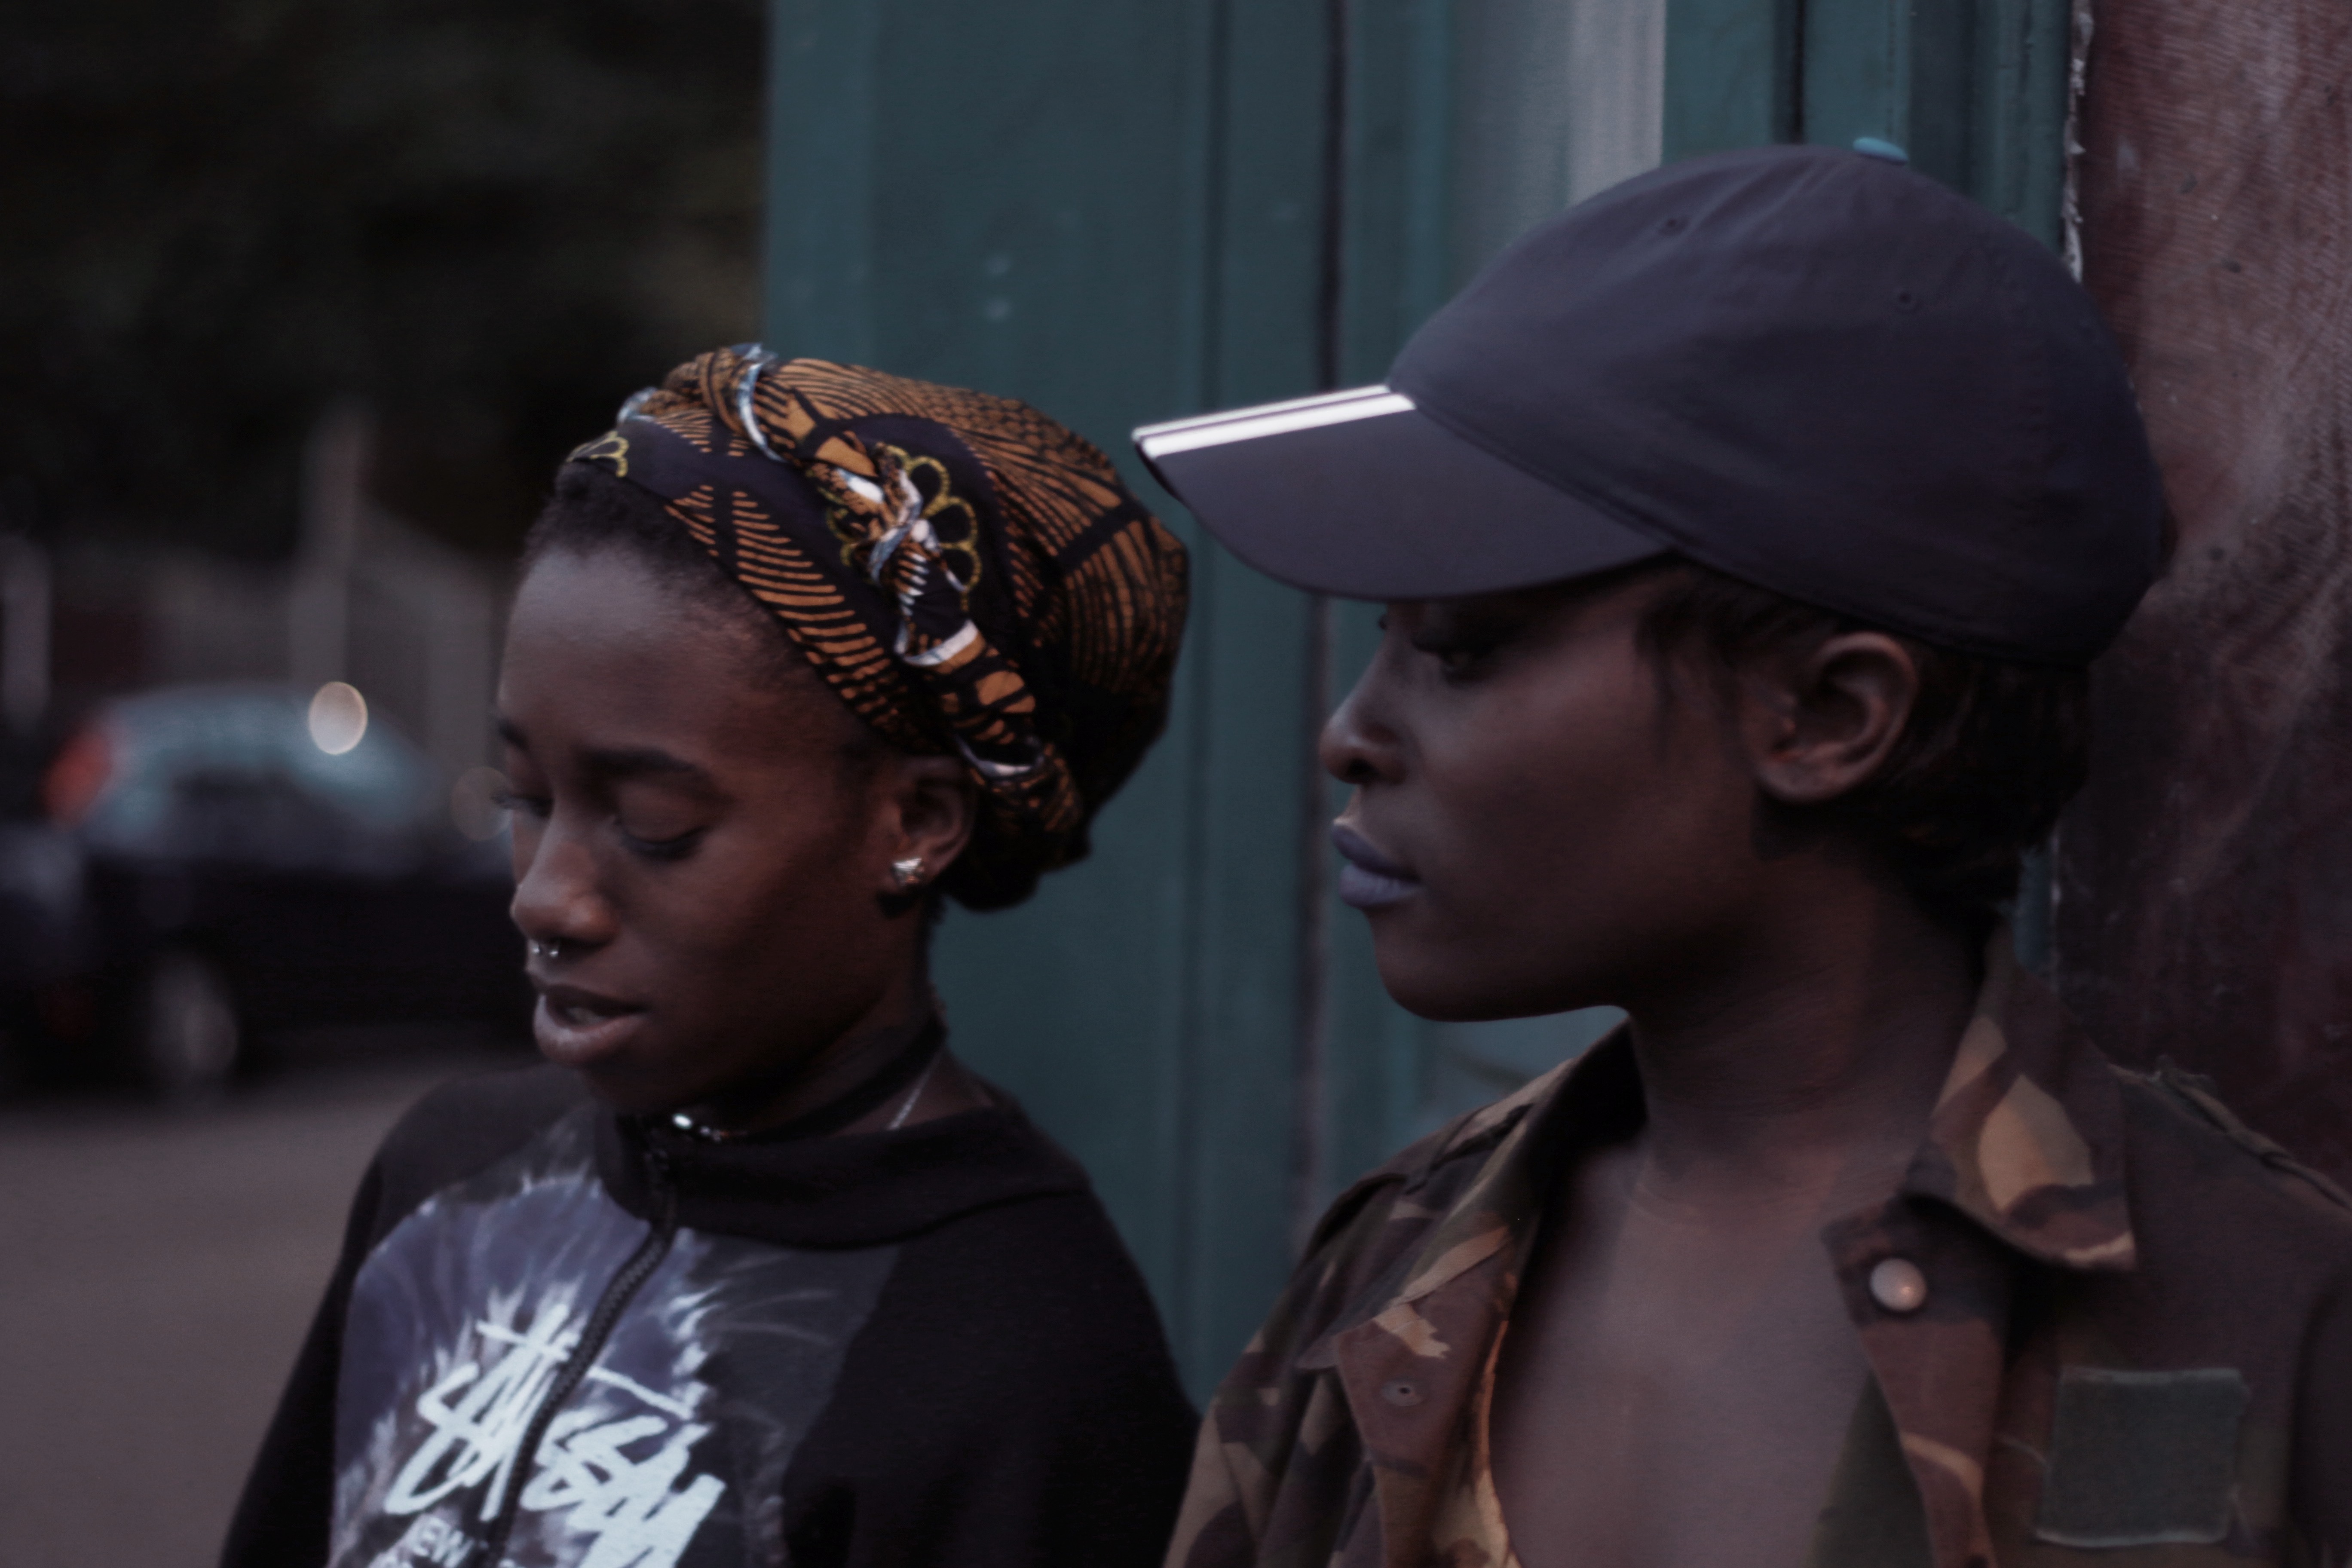 Michelle Tiwo and Vanessa Babirye on the Ackee & Saltfish sisterhood